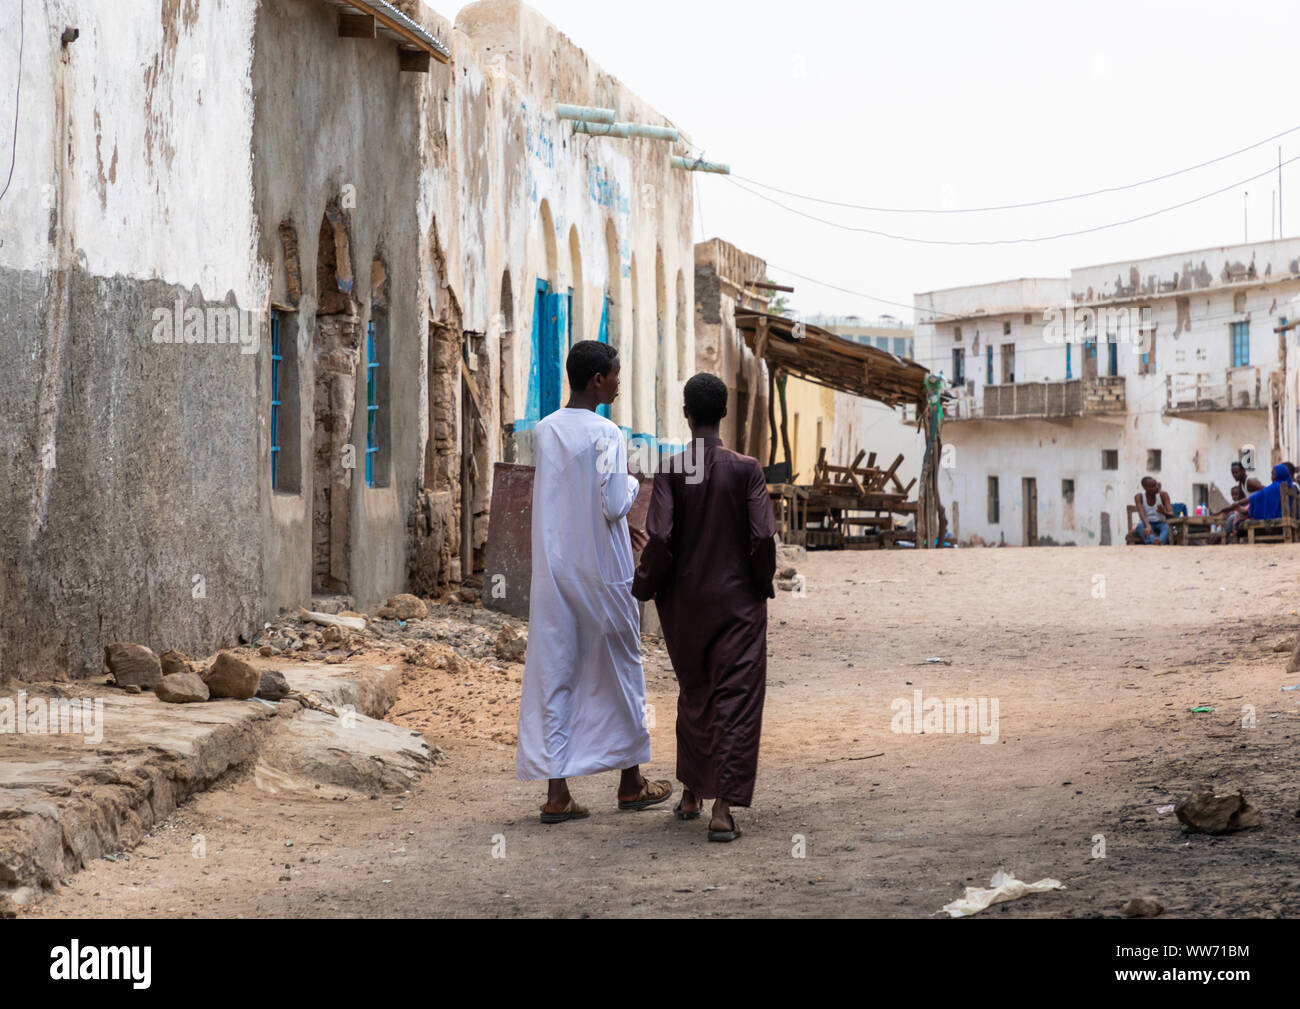 Somali men walking in the old town, Sahil region, Berbera, Somaliland Stock Photo